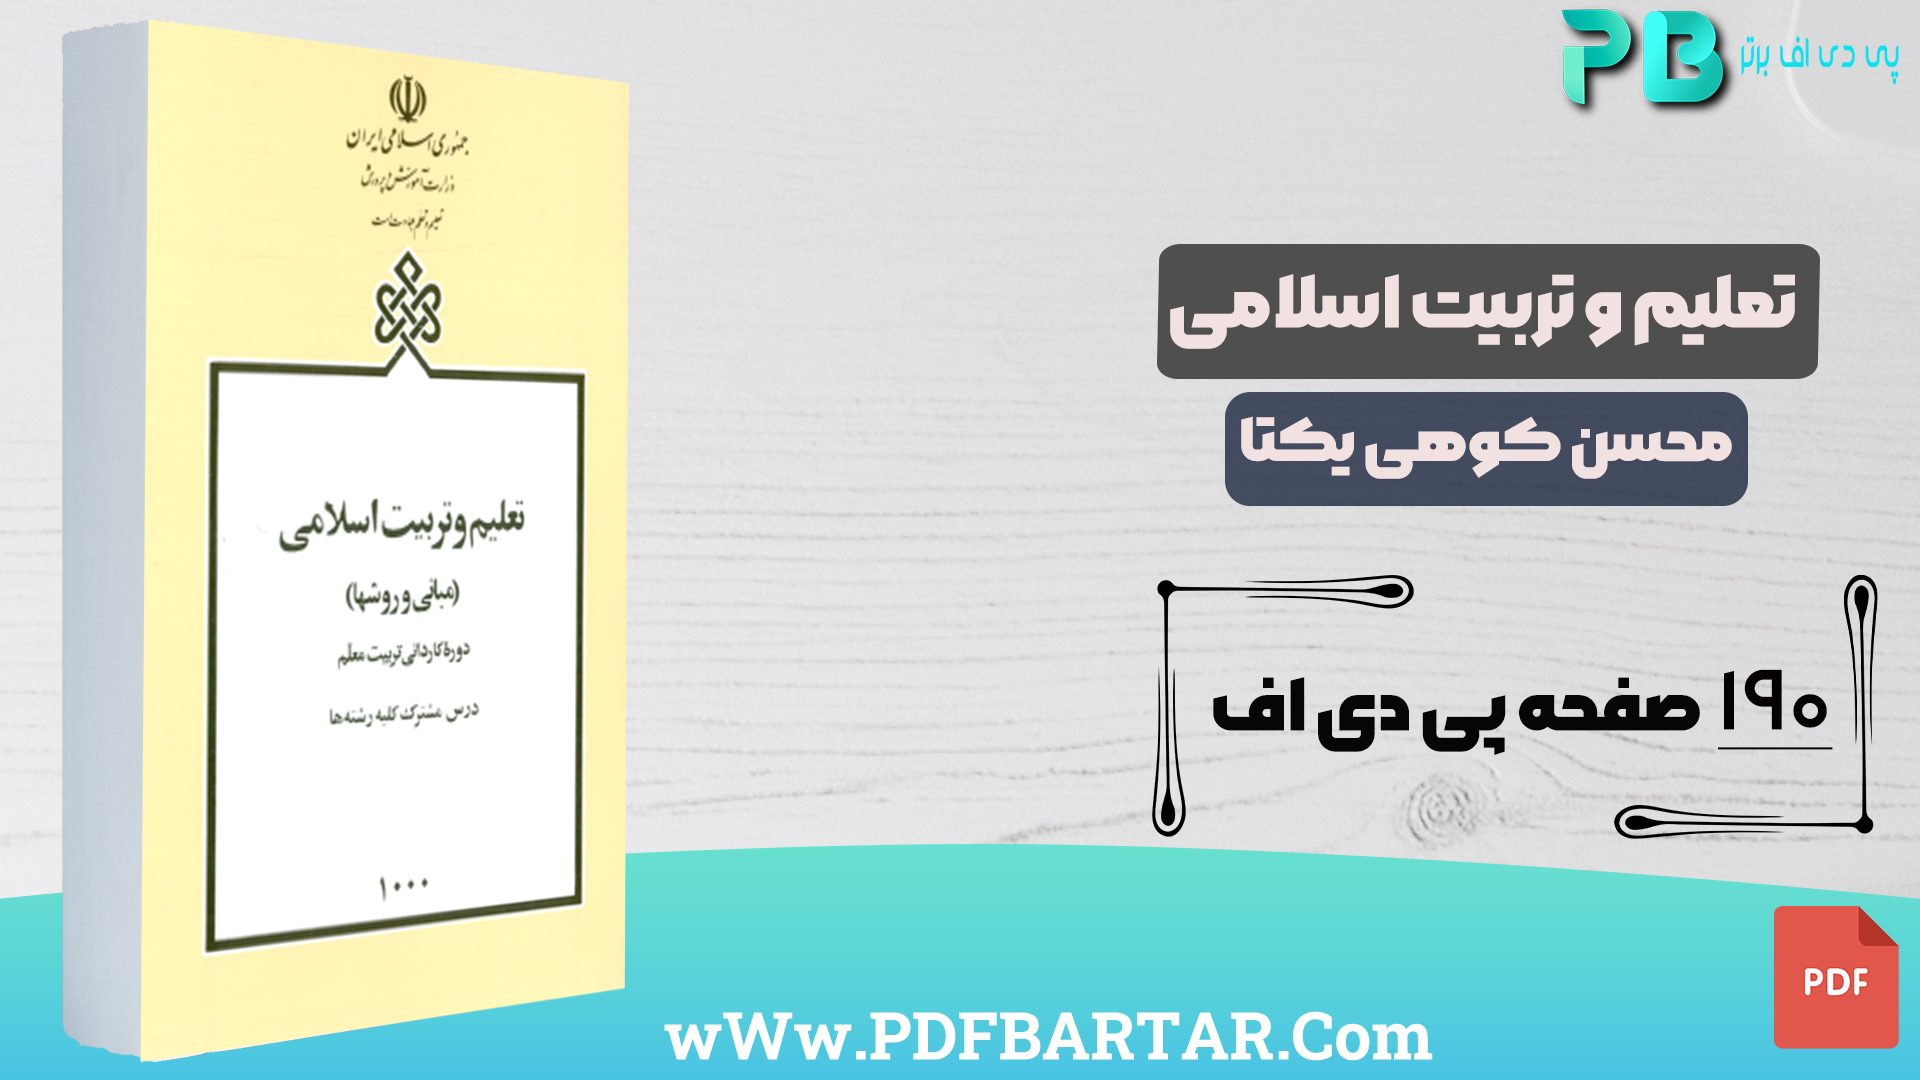 دانلود پی دی اف کتاب تعلیم و تربیت اسلامی محسن کوهی یکتا PDF - پی دی اف برتر